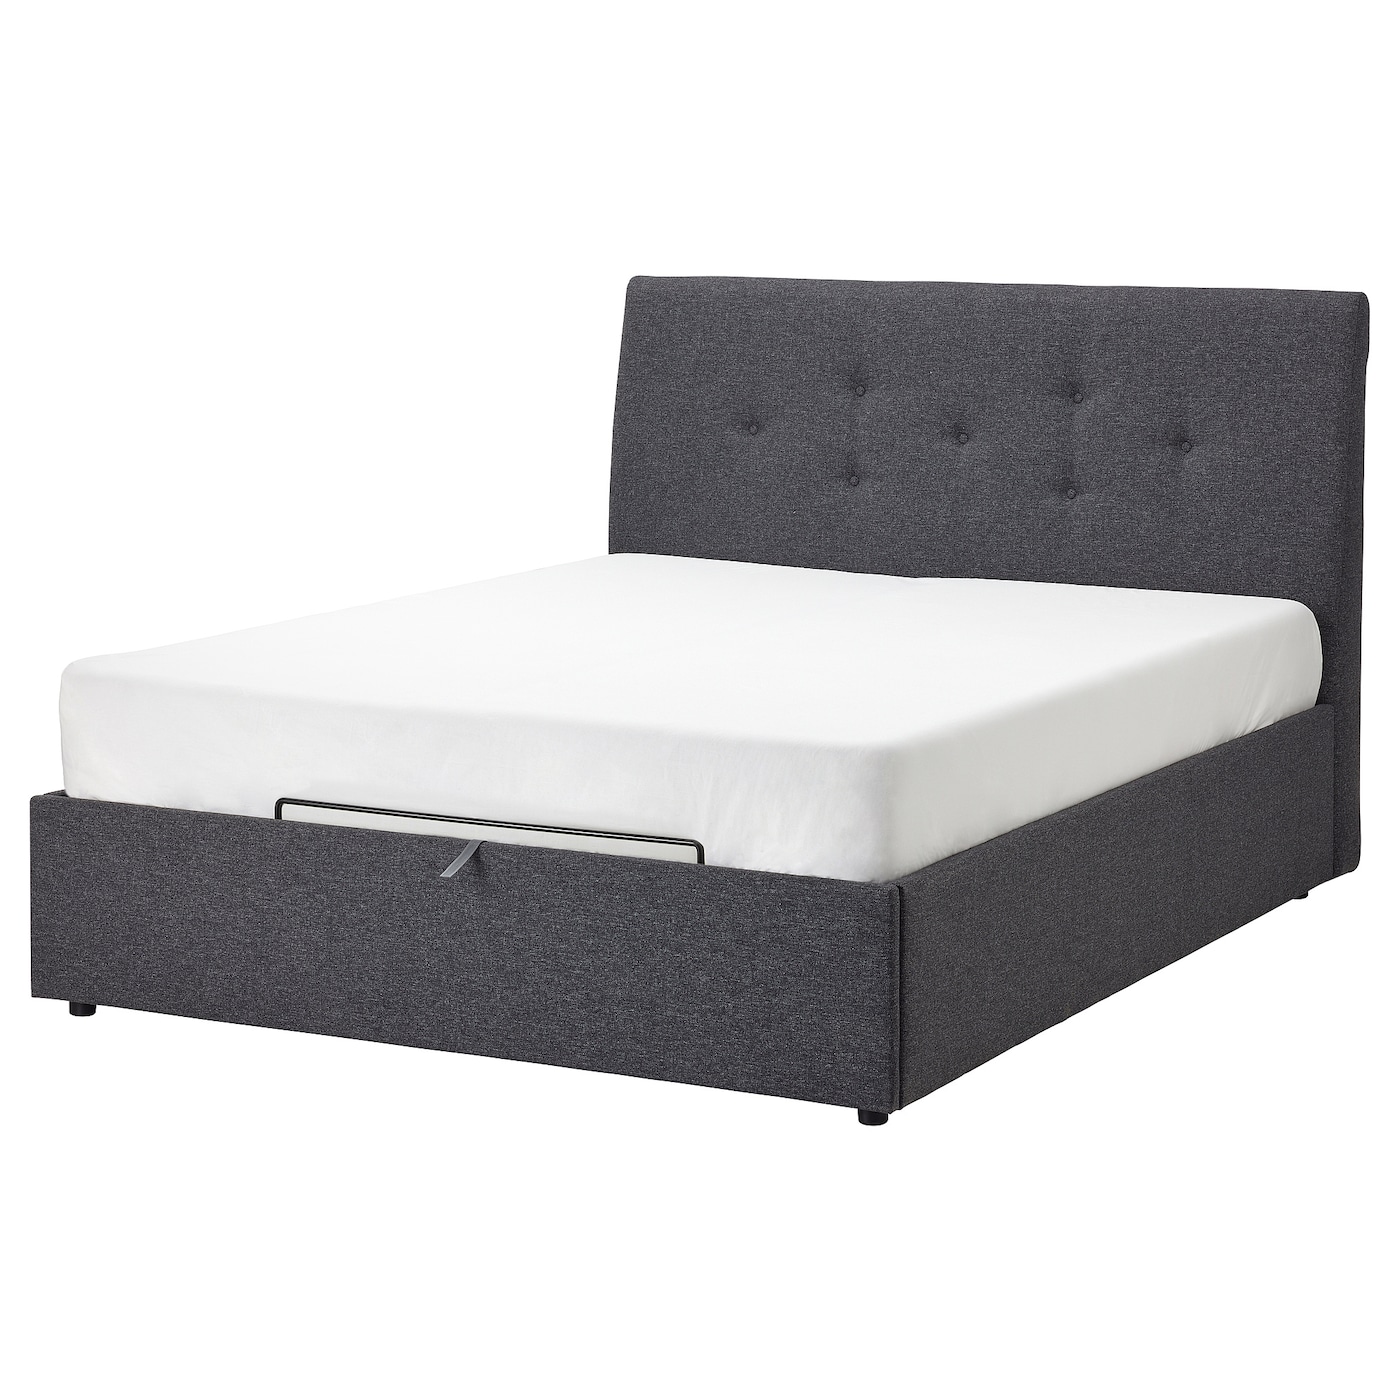 Кровать с местом для хранения  - IKEA IDANÄS/IDANAS, 200х160 см, темно-серый, ИДАНЭС ИКЕА